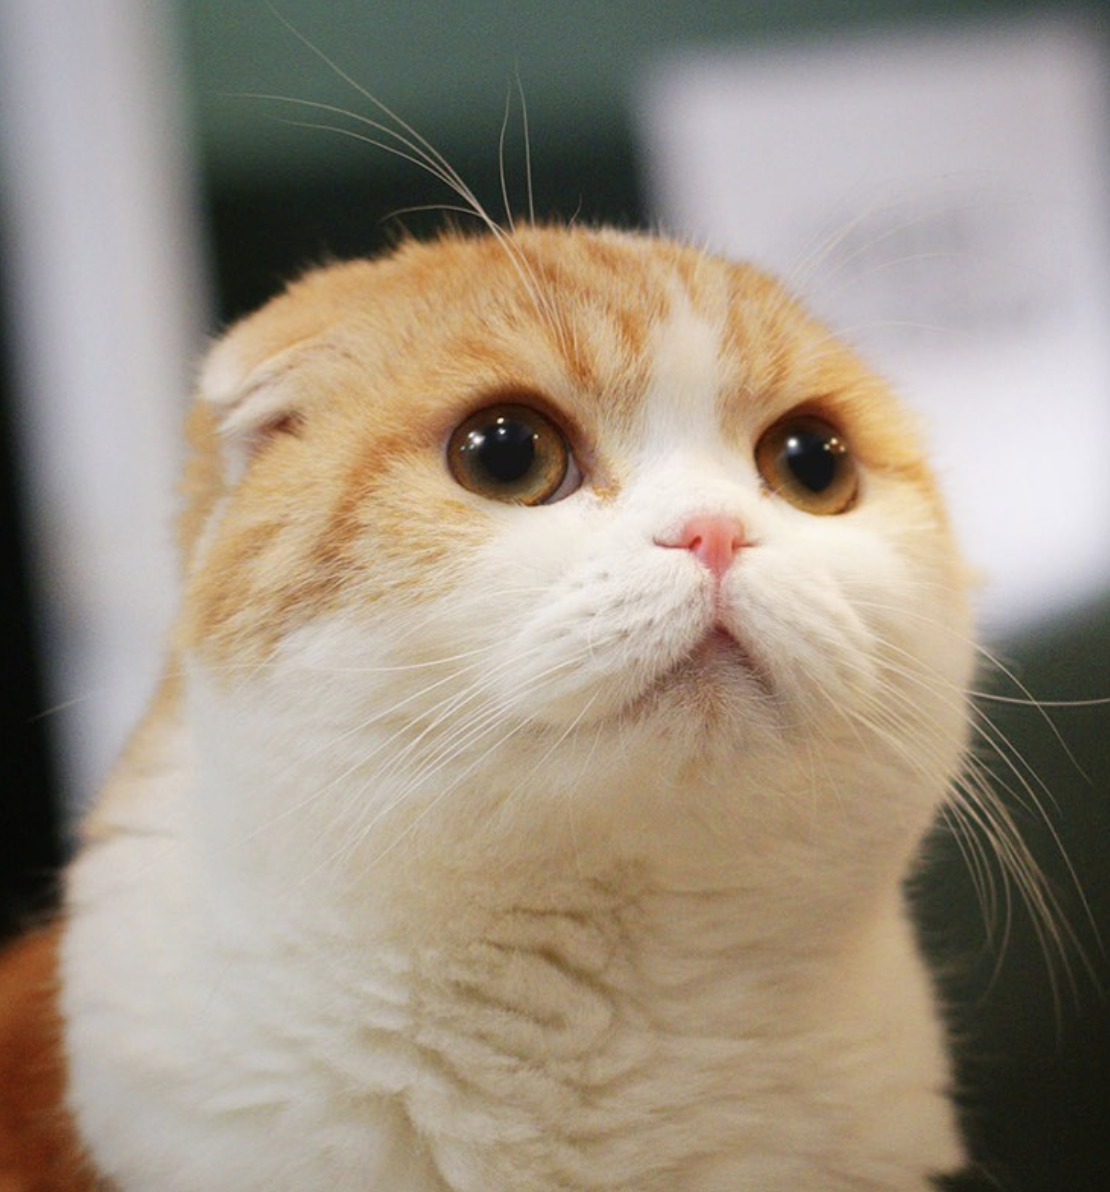 4. Waffles the cat: Chú mèo này có 913 nghìn người theo dõi trên Instagram. Waffles the cat sở hữu đôi mắt to tròn, đôi tai bé xíu. Ảnh: waffles_the_cat